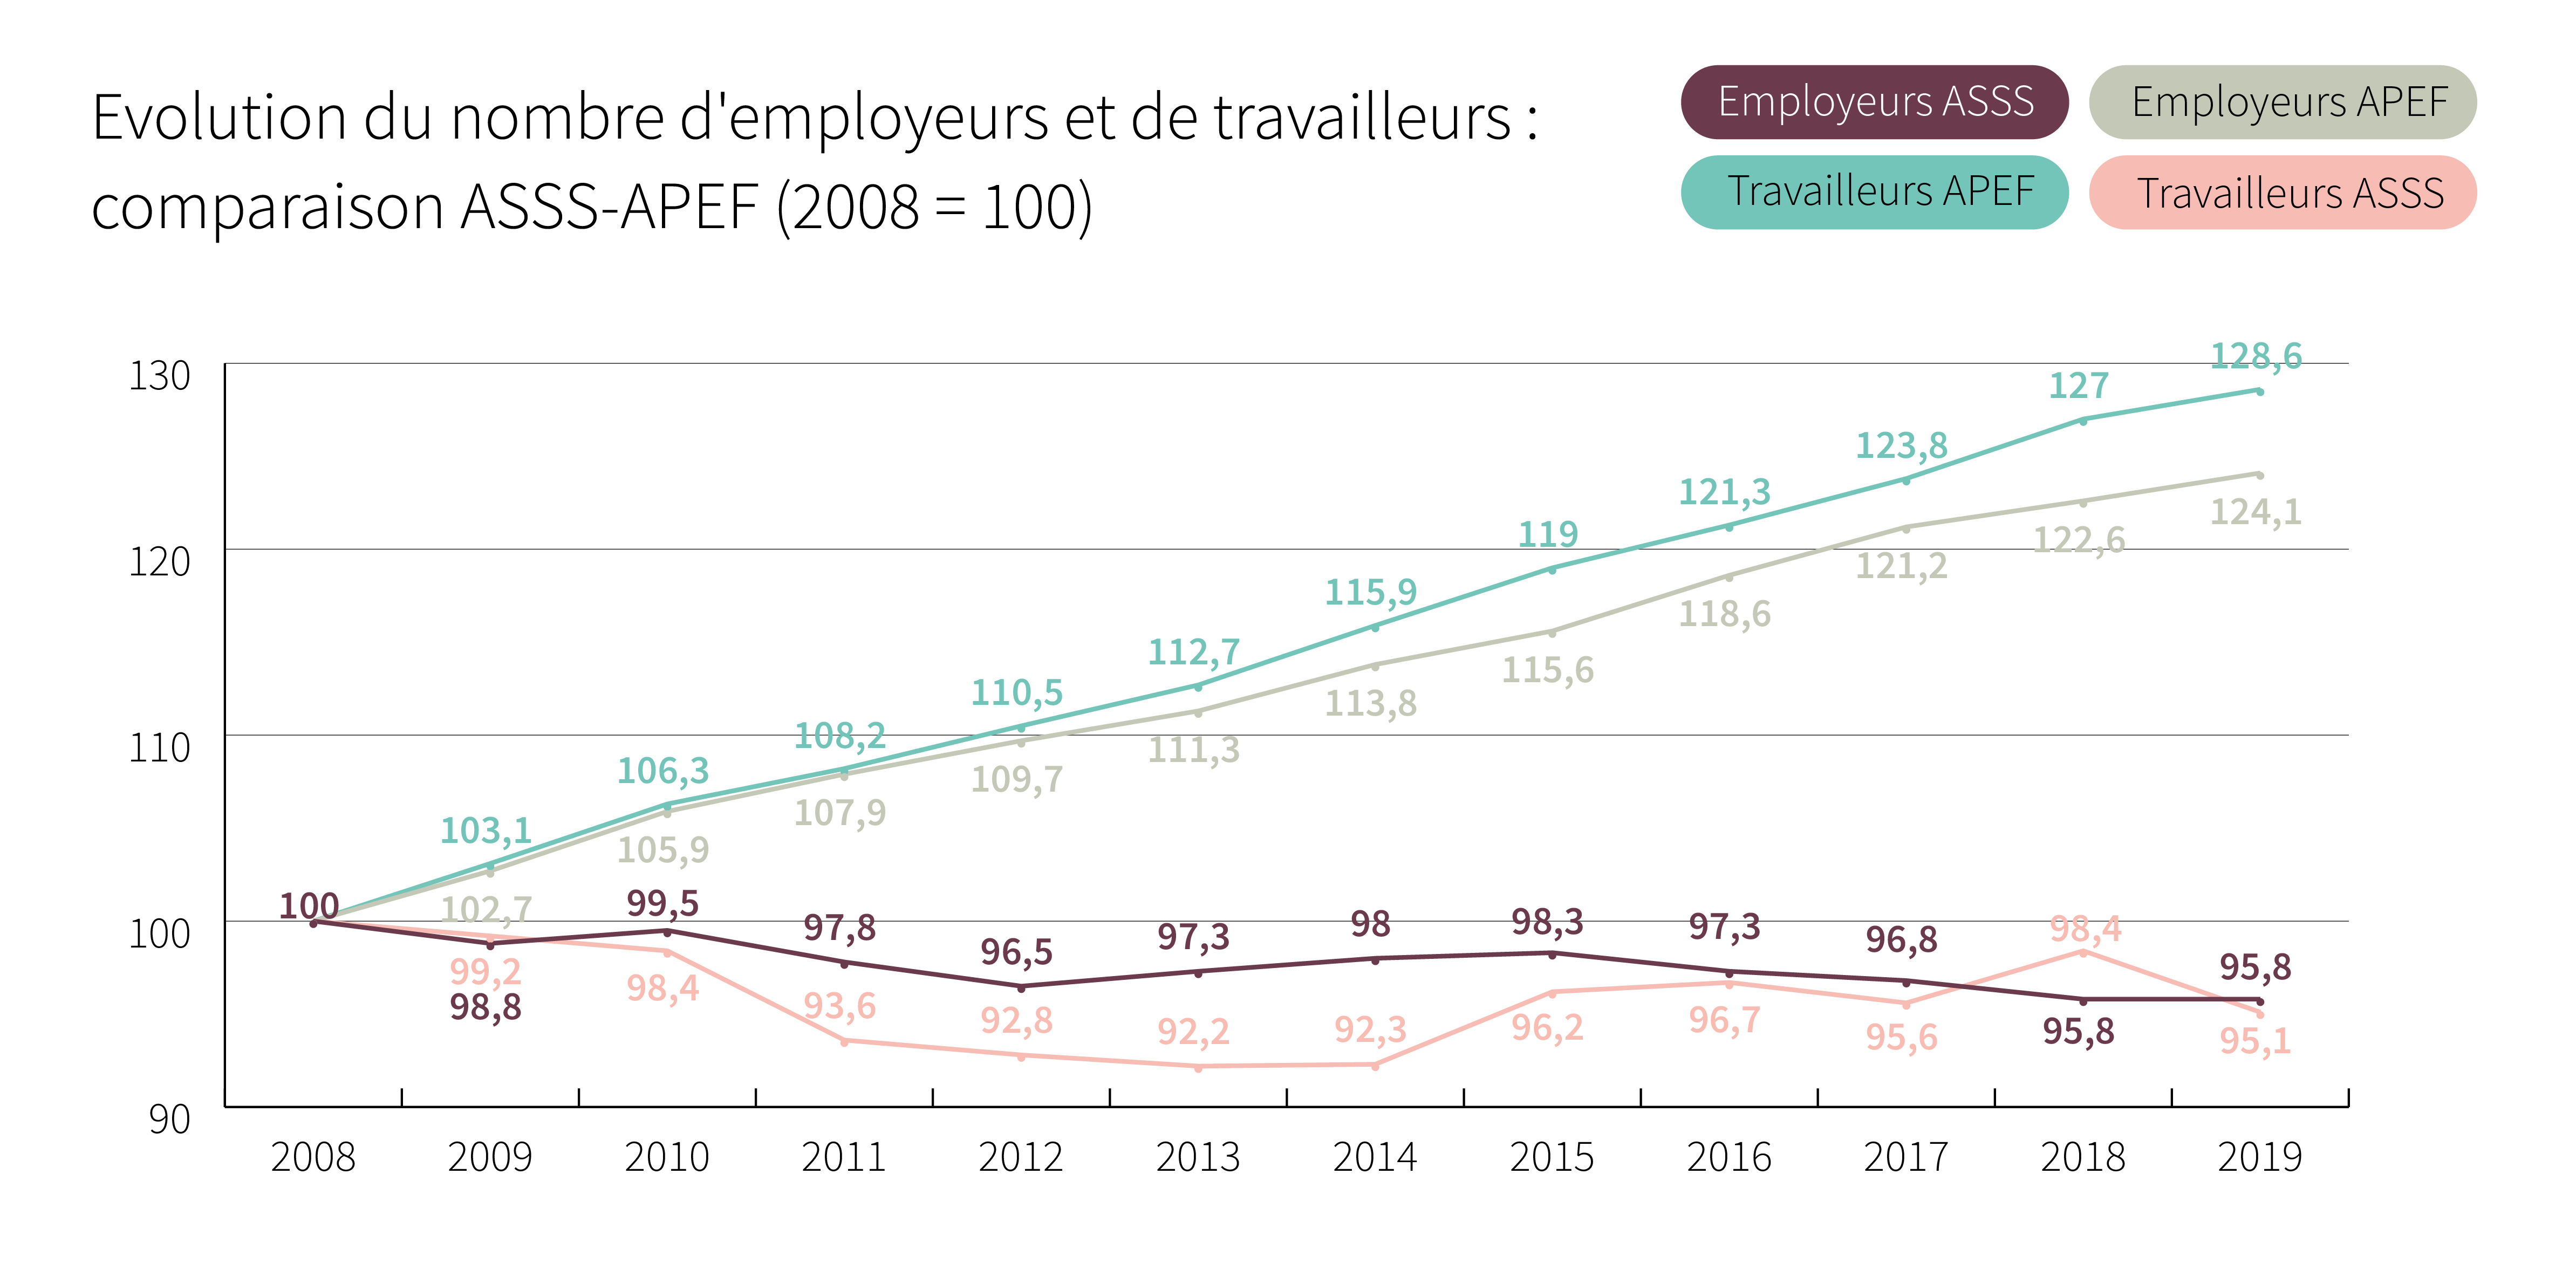 Evolution du nombre d’employeurs et de travailleurs: comparaison ASSS-APEF (2008 = 100) - Cliquez pour agrandir